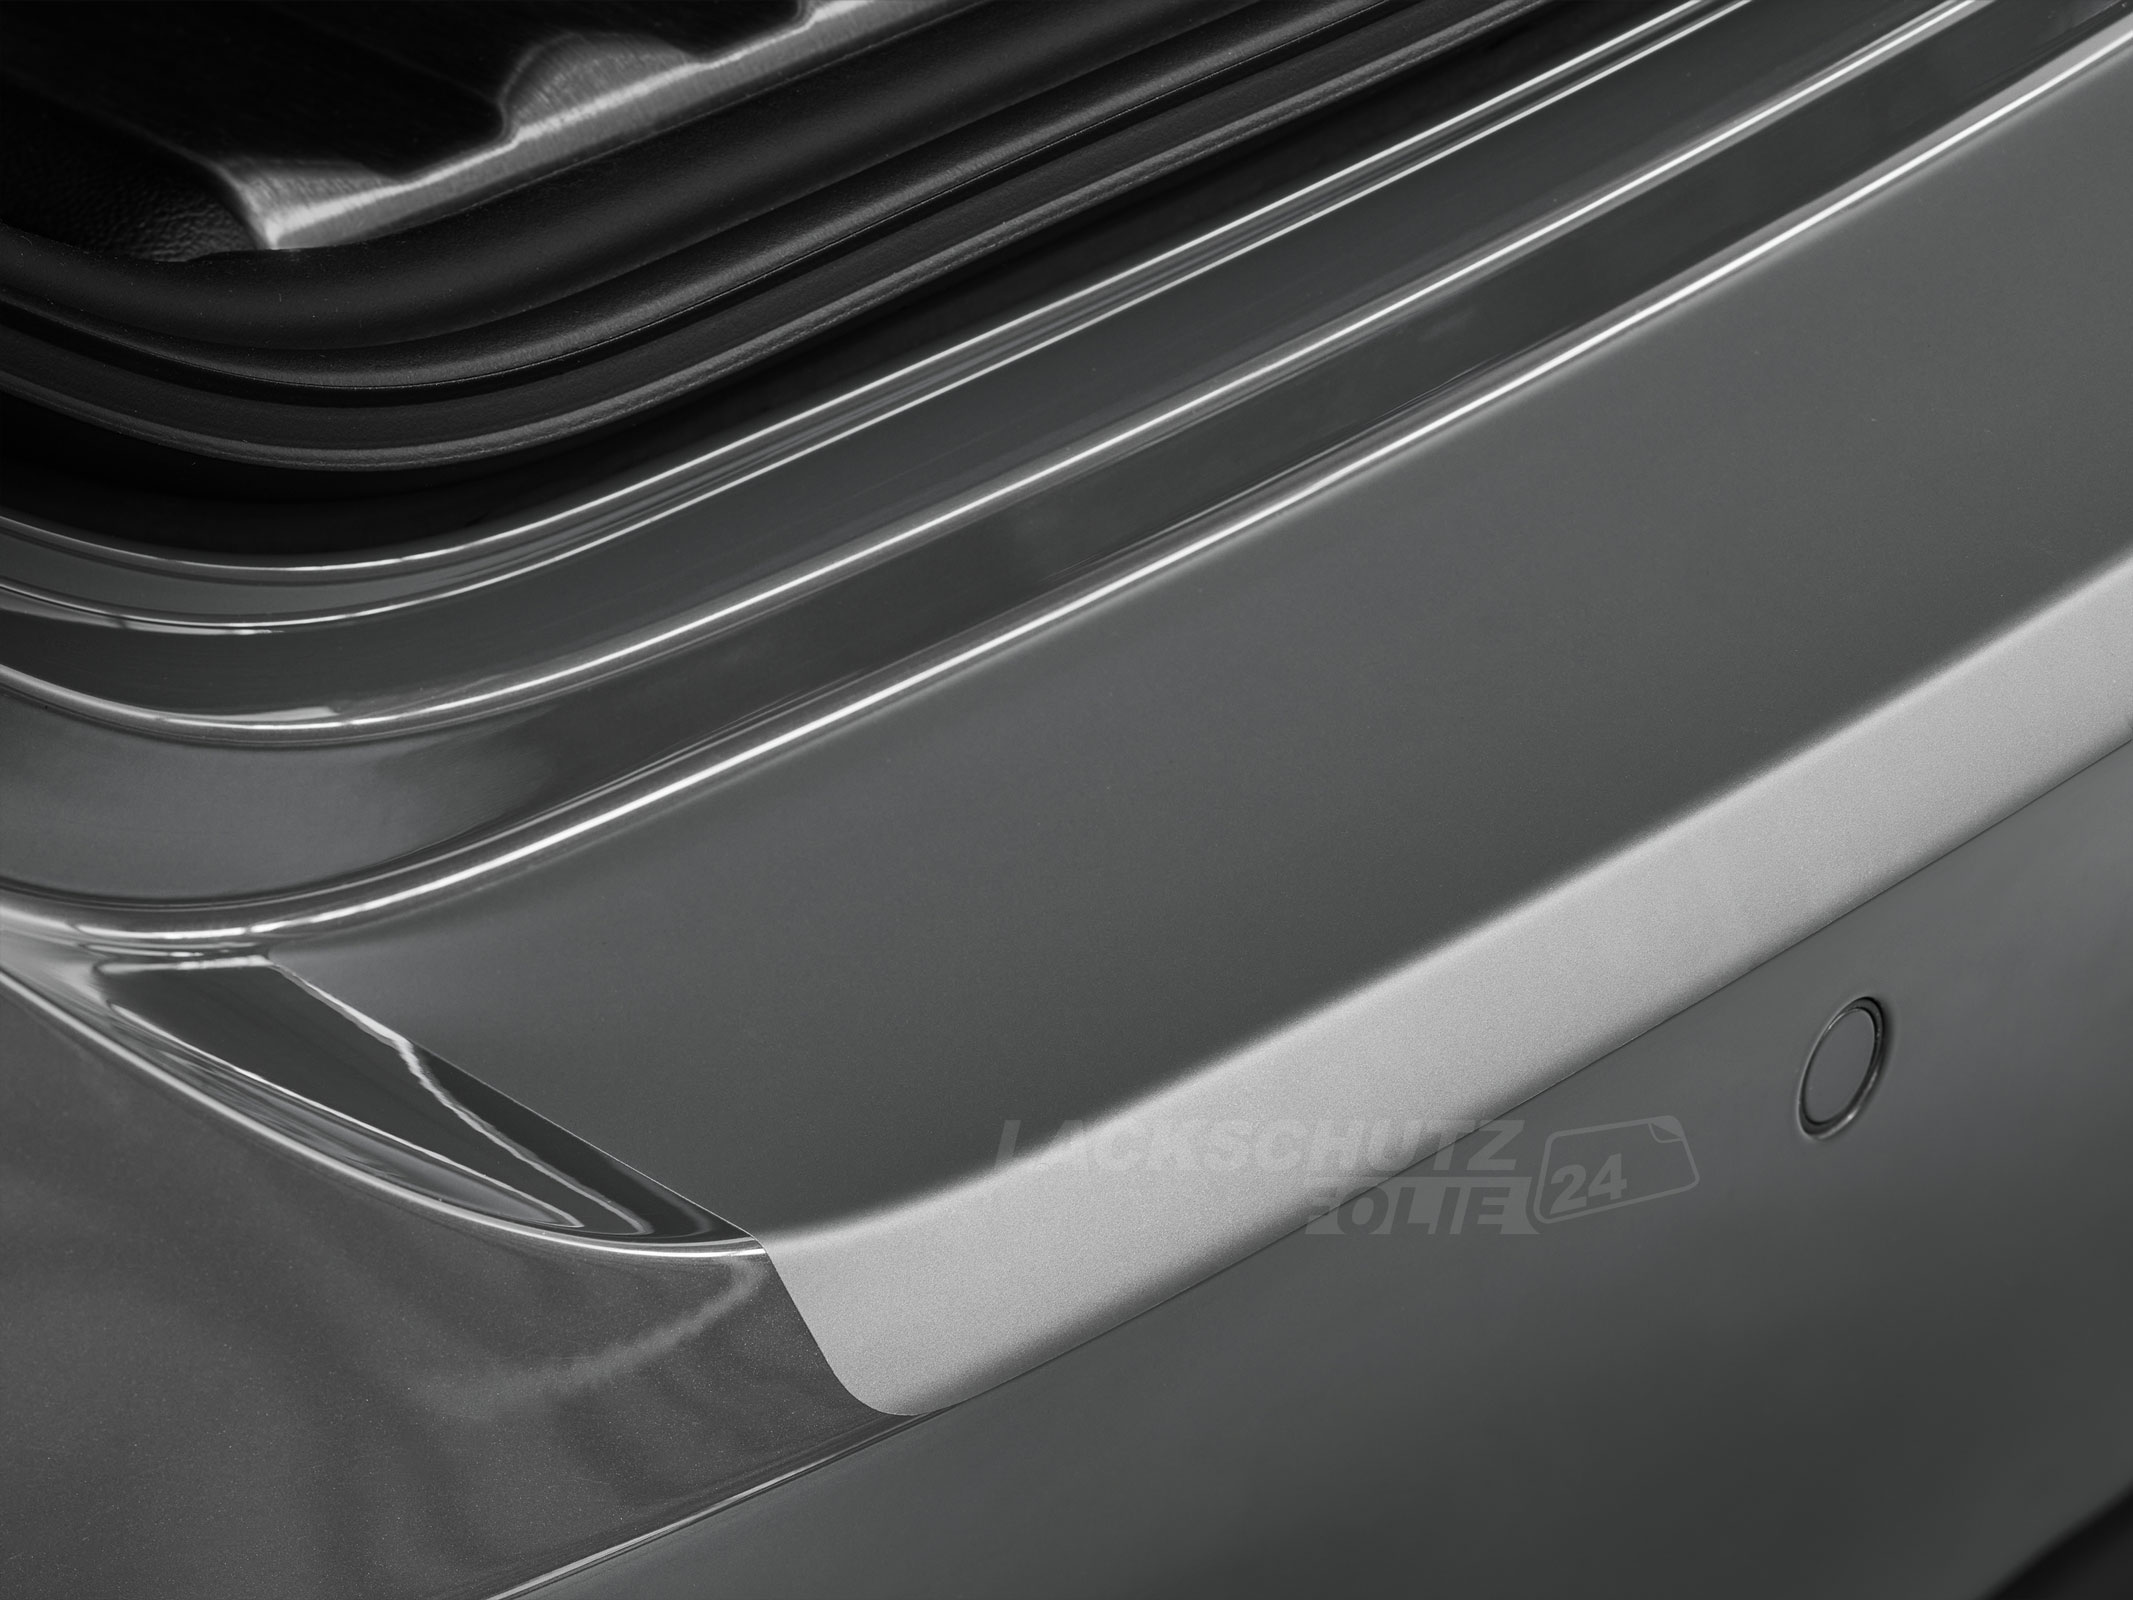 Ladekantenschutzfolie - Transparent Glatt MATT 110 µm stark  für BMW 5er Limousine Typ E60, BJ 2004-2010